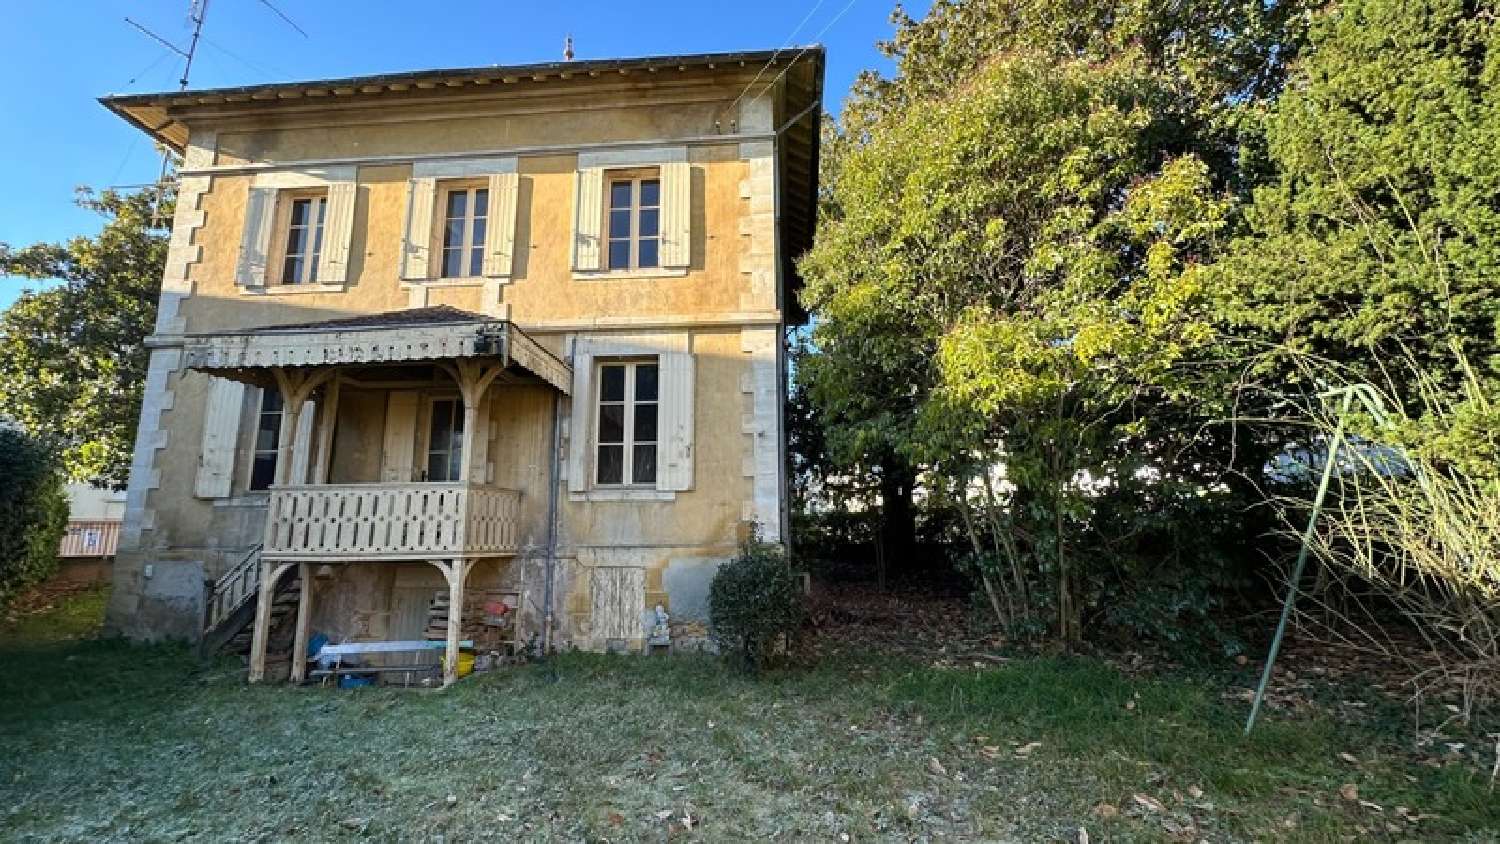  à vendre maison bourgeoise Bergerac Dordogne 2